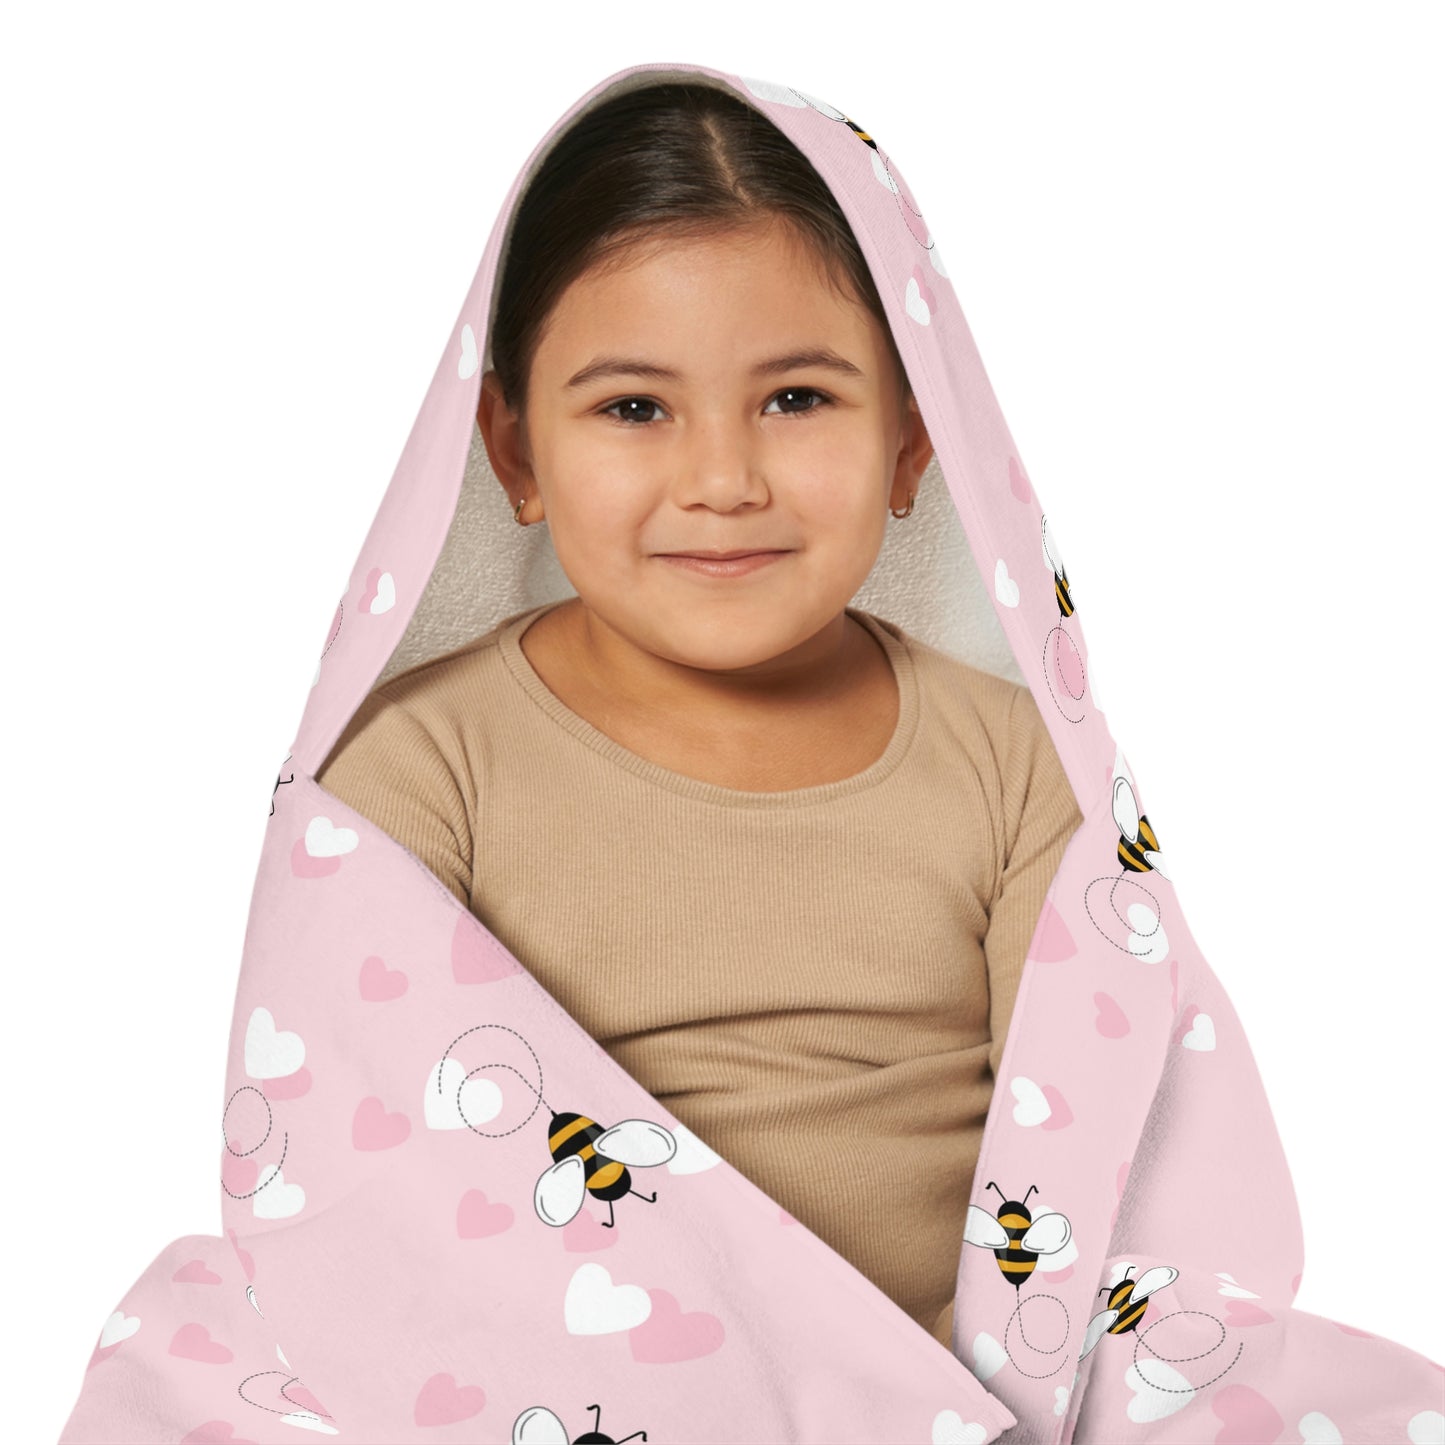 Honey Bee Hearts Youth Hooded Towel